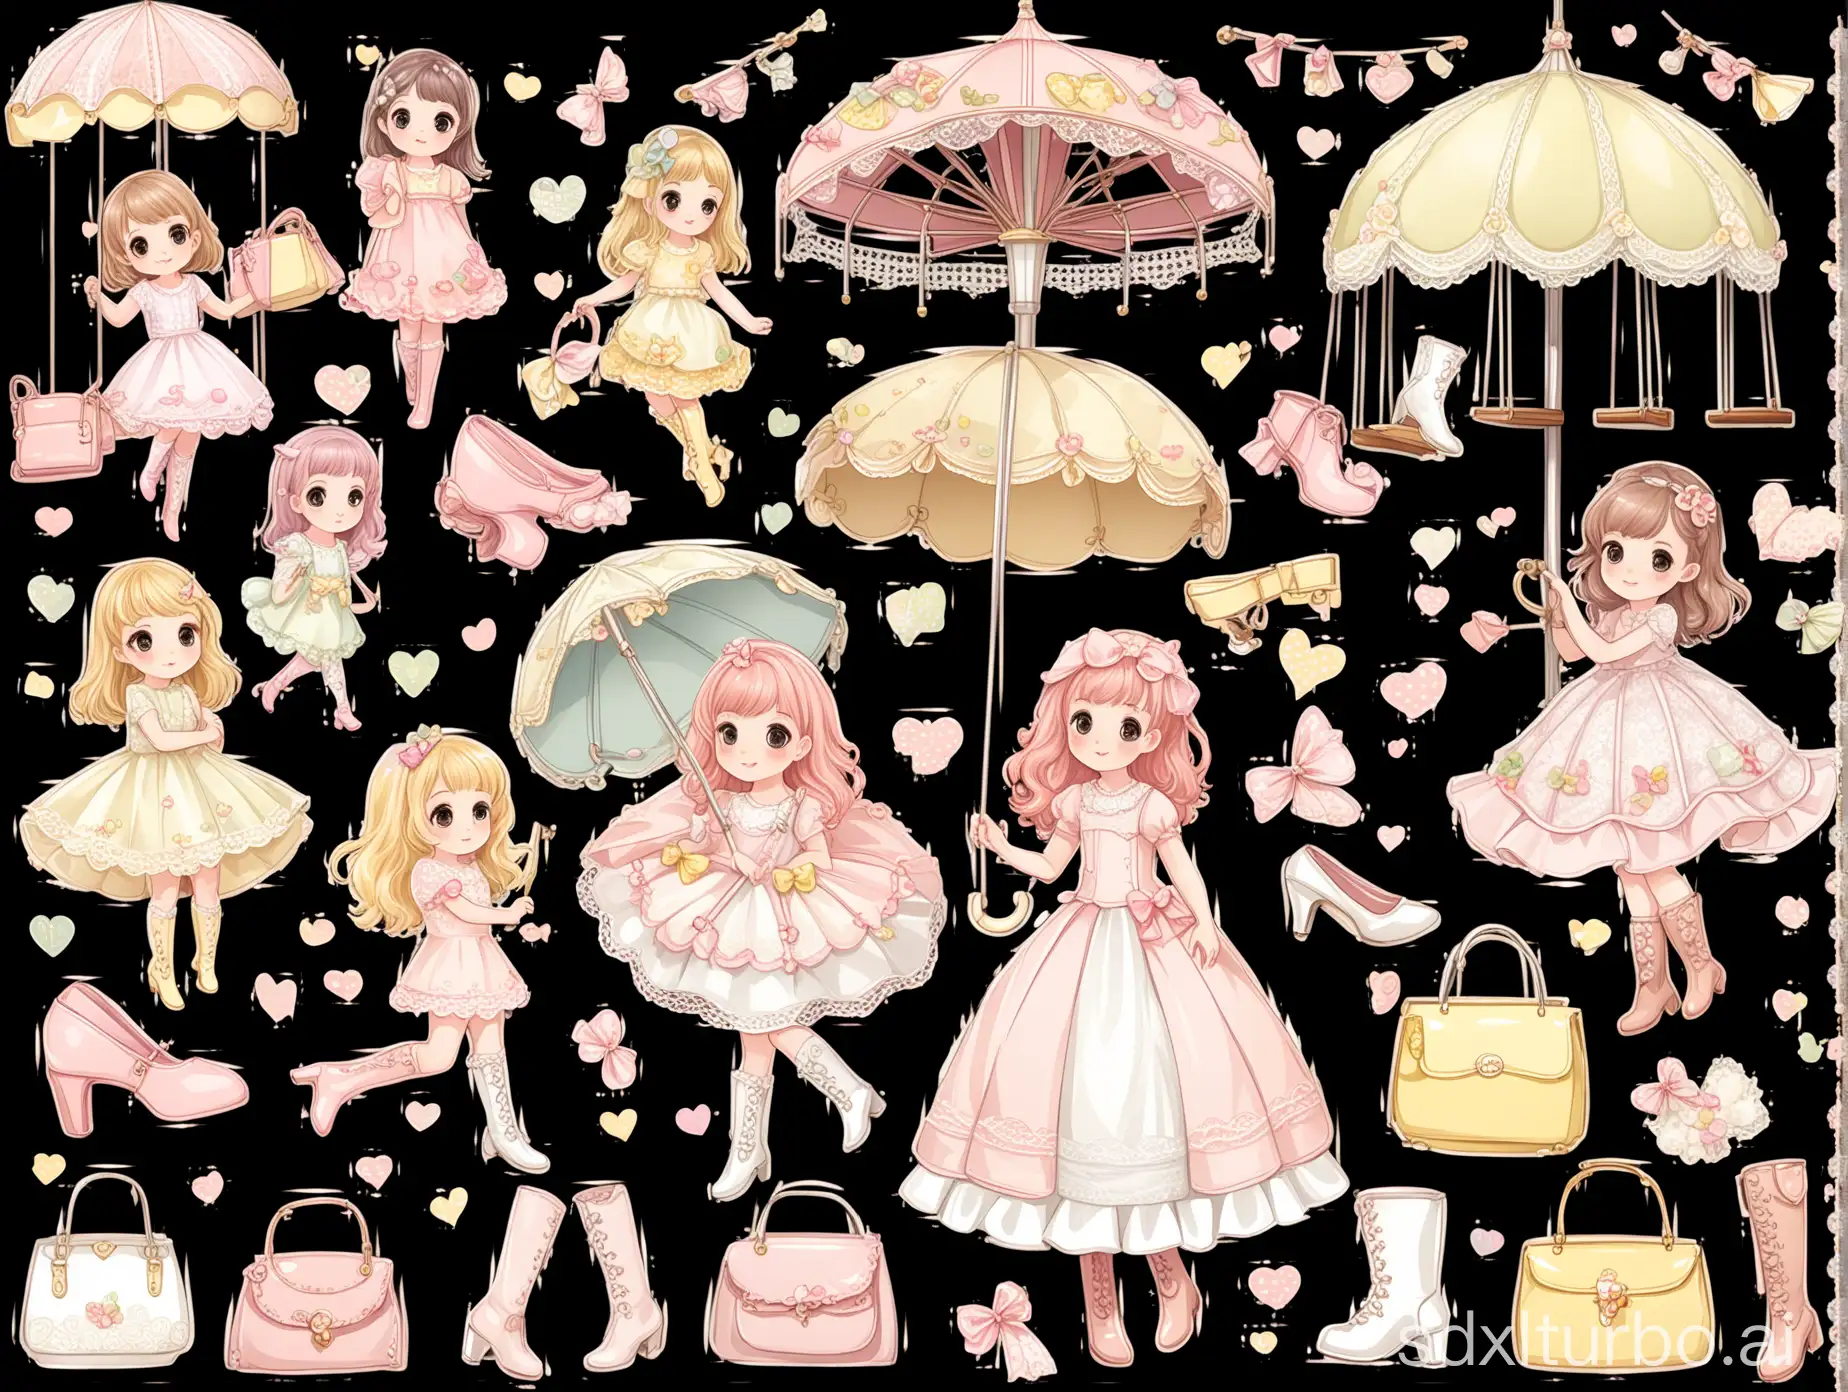 一组日系的透明背景的贴纸图案，以浅粉色、淡黄色为主，包含可爱甜美小女孩、蕾丝遮阳伞、高跟鞋、马丁靴、手提包、秋千、旋转木马等等